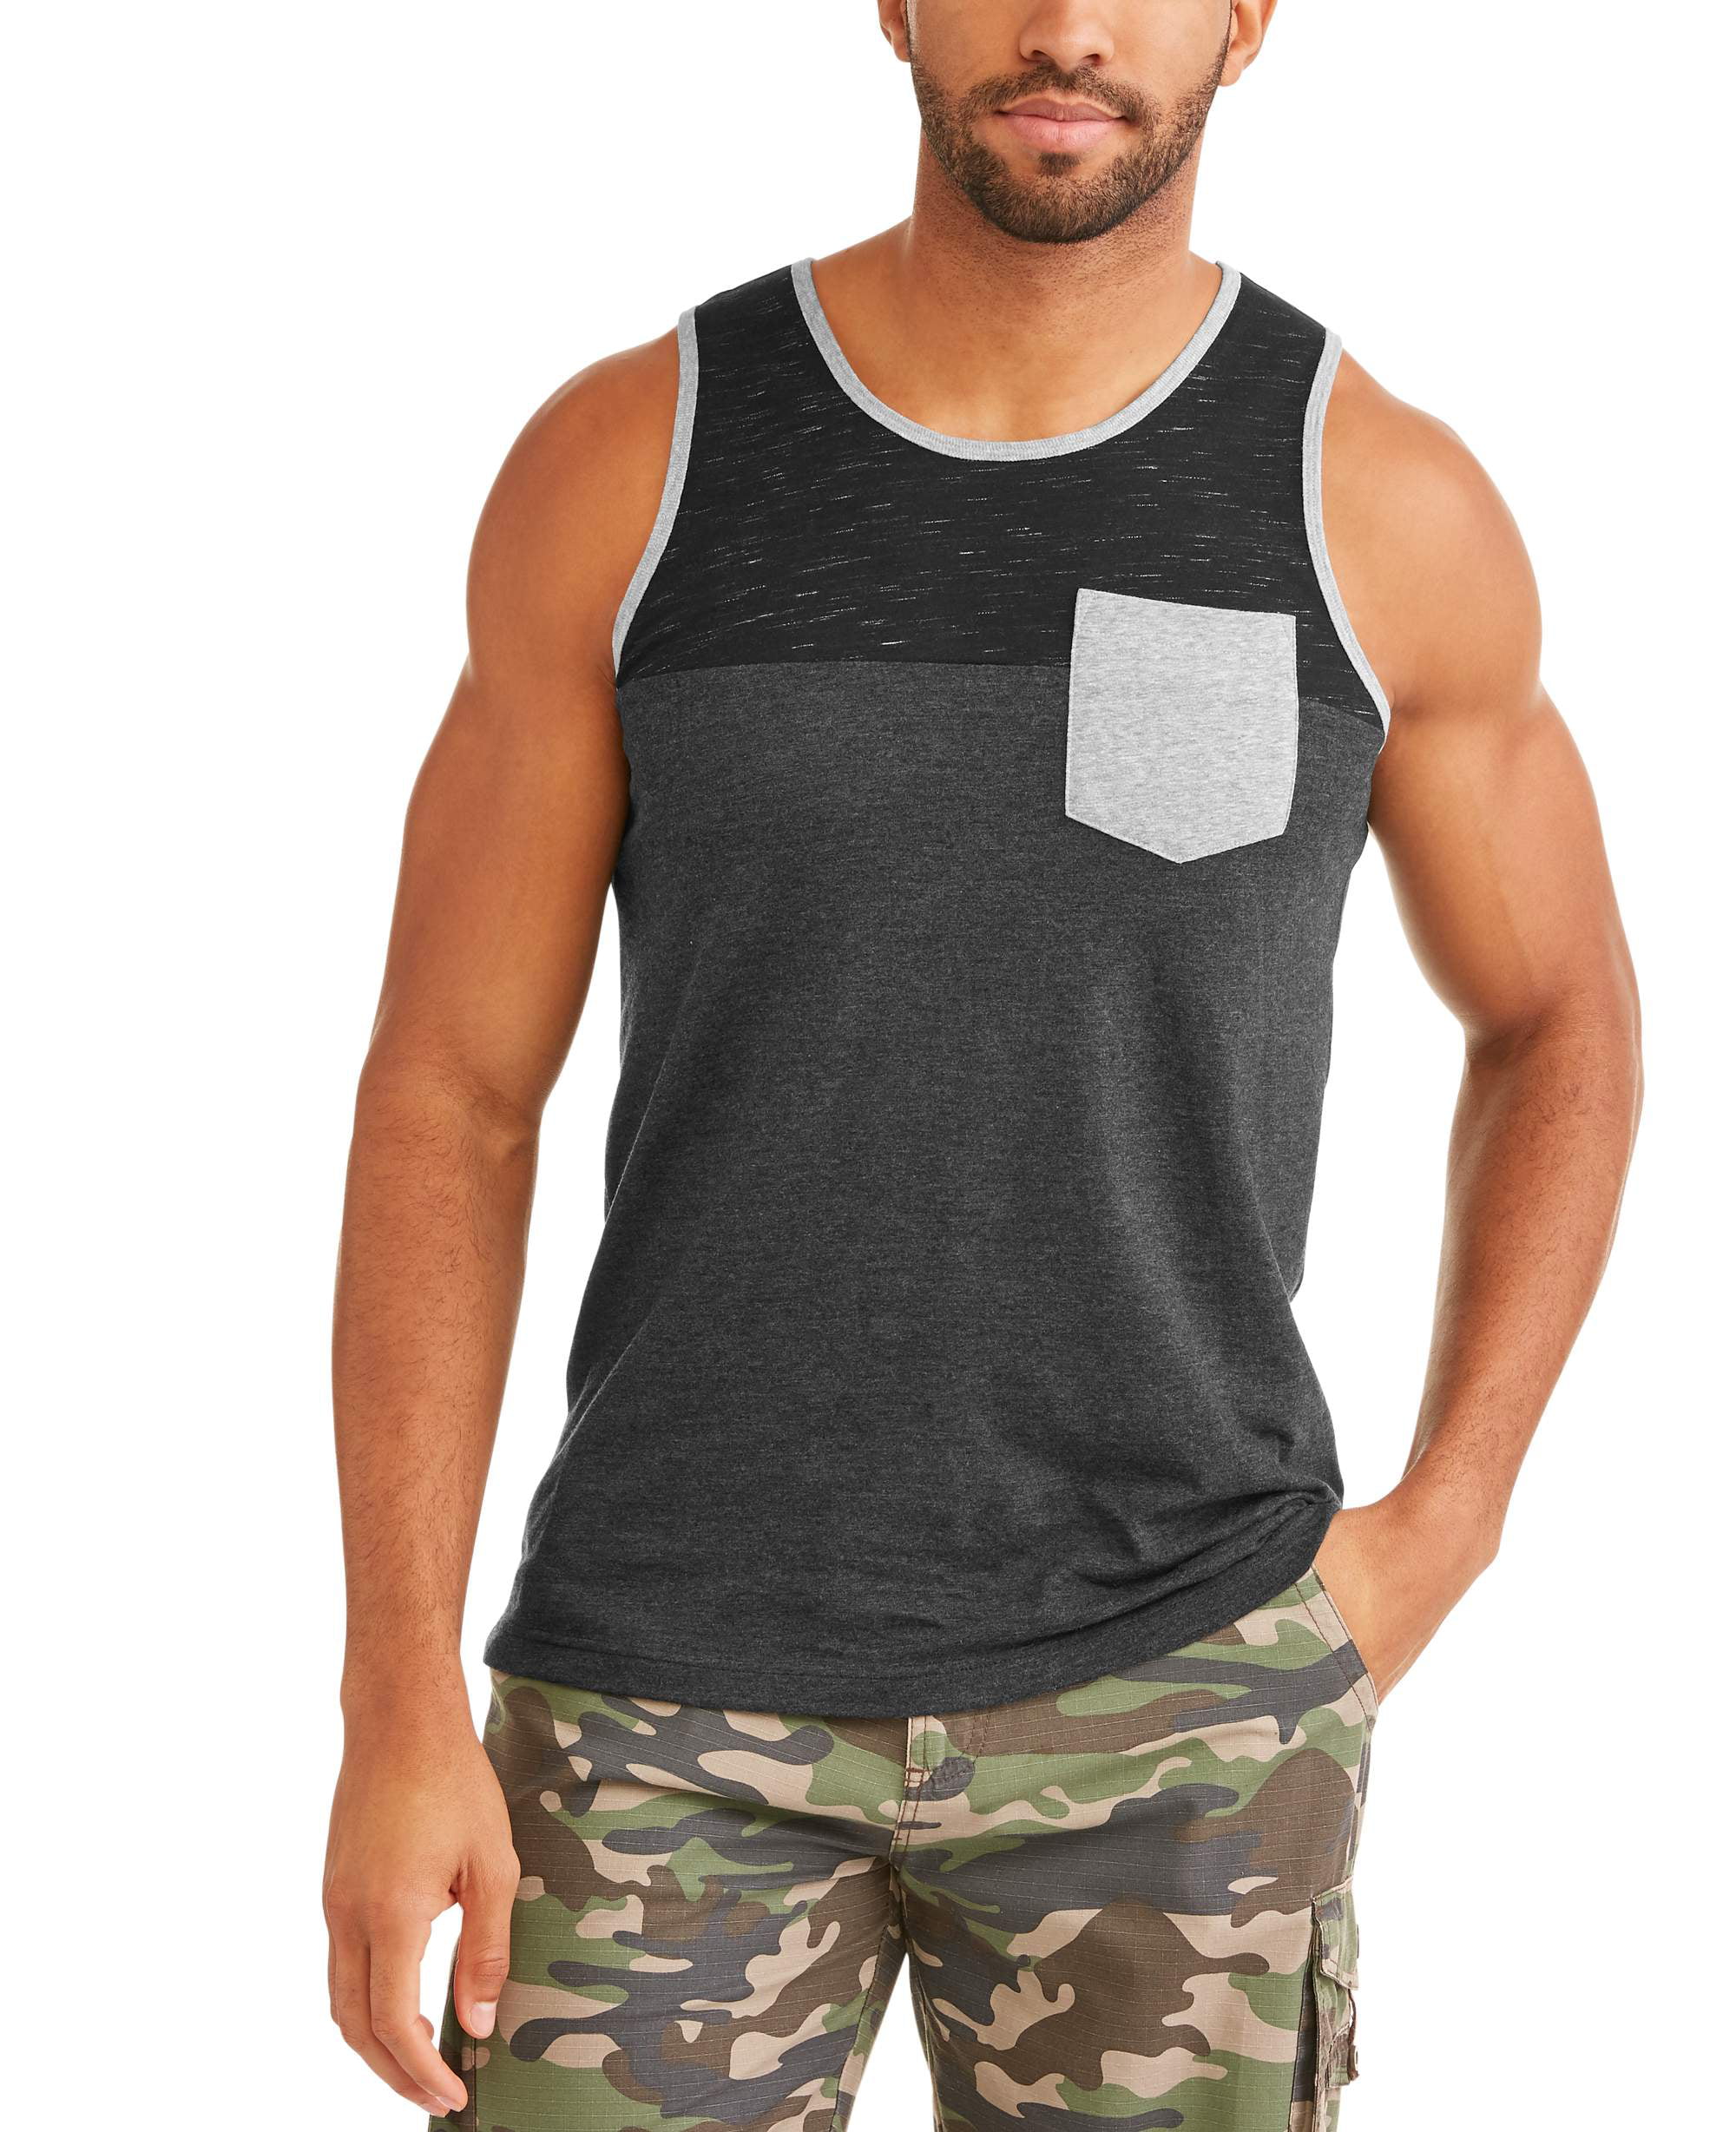 Men S Color Block Tank Top With Pocket Walmart Com